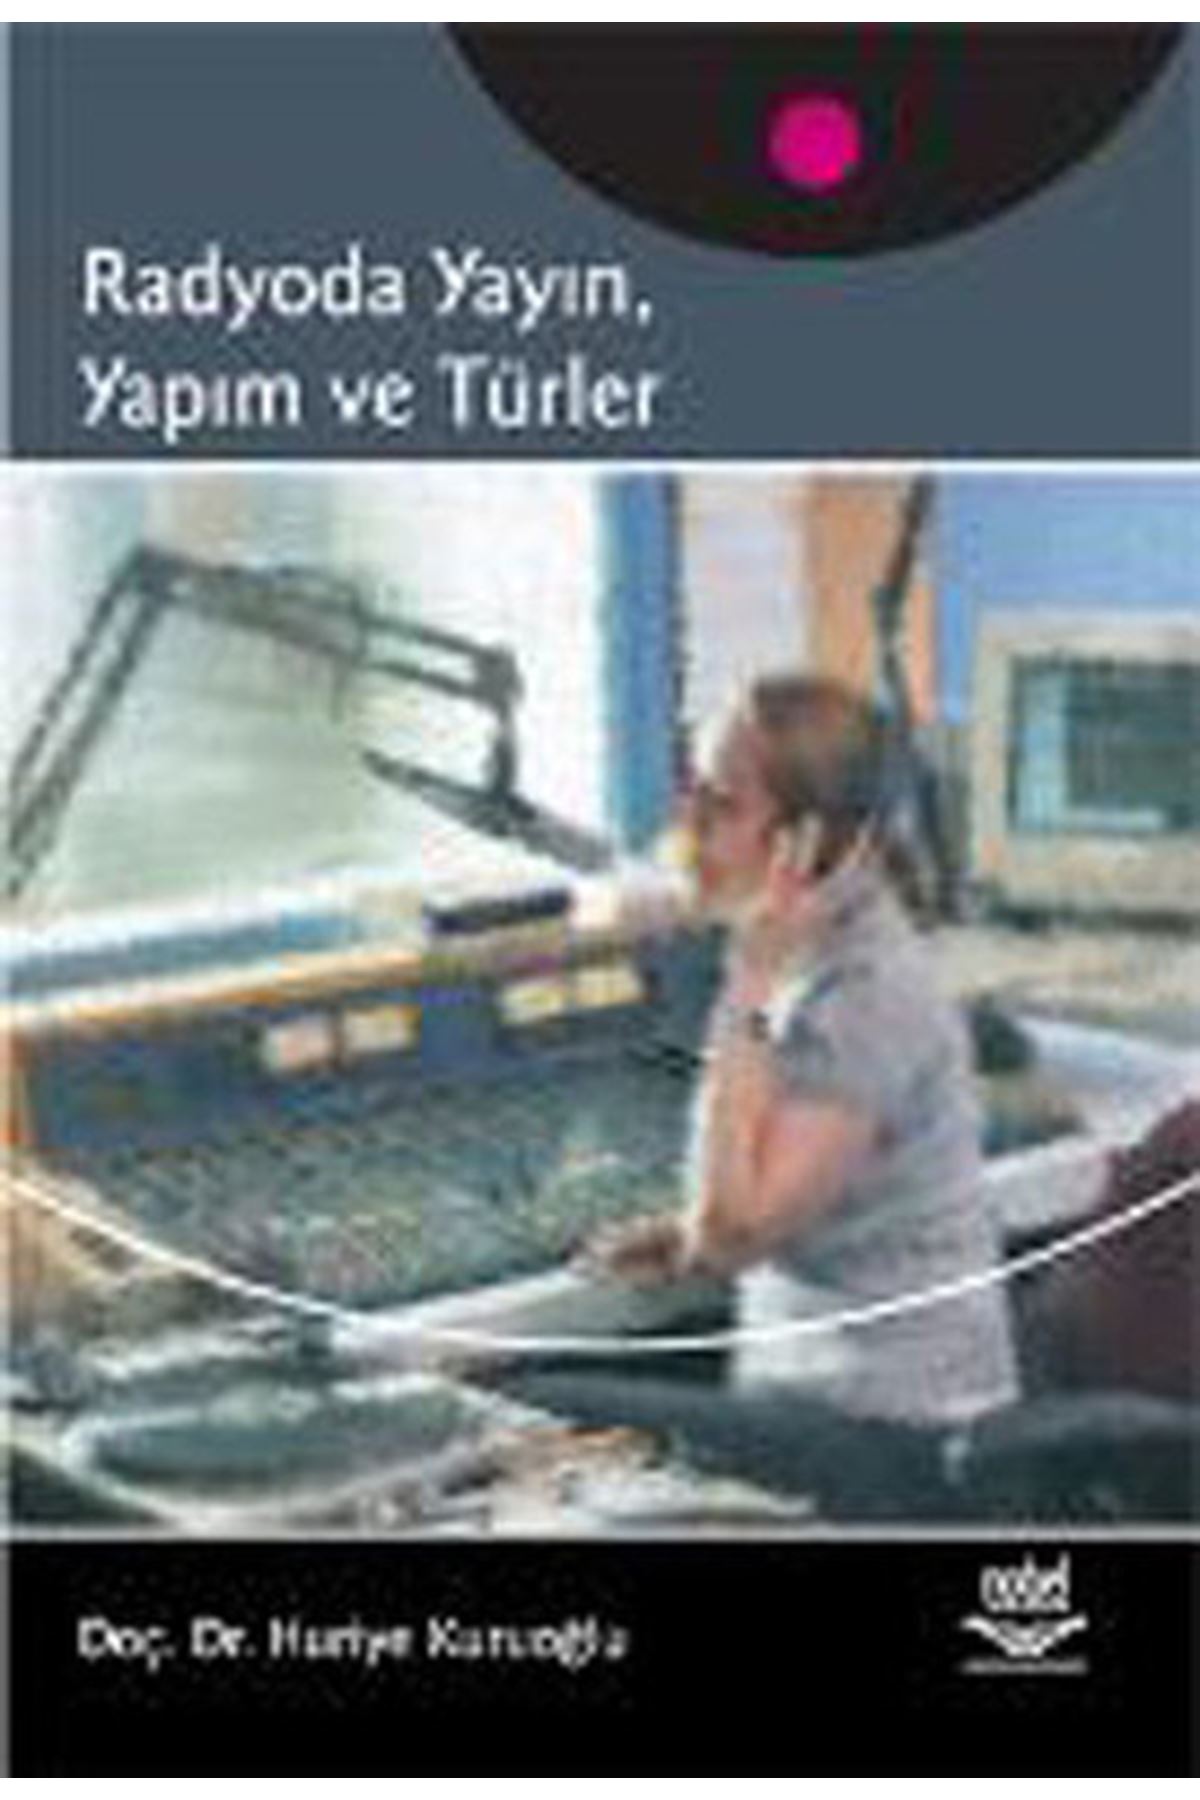 Doç.Dr. Huriye Kuruoğlu - radyoda yayın, yapım ve süreçleri